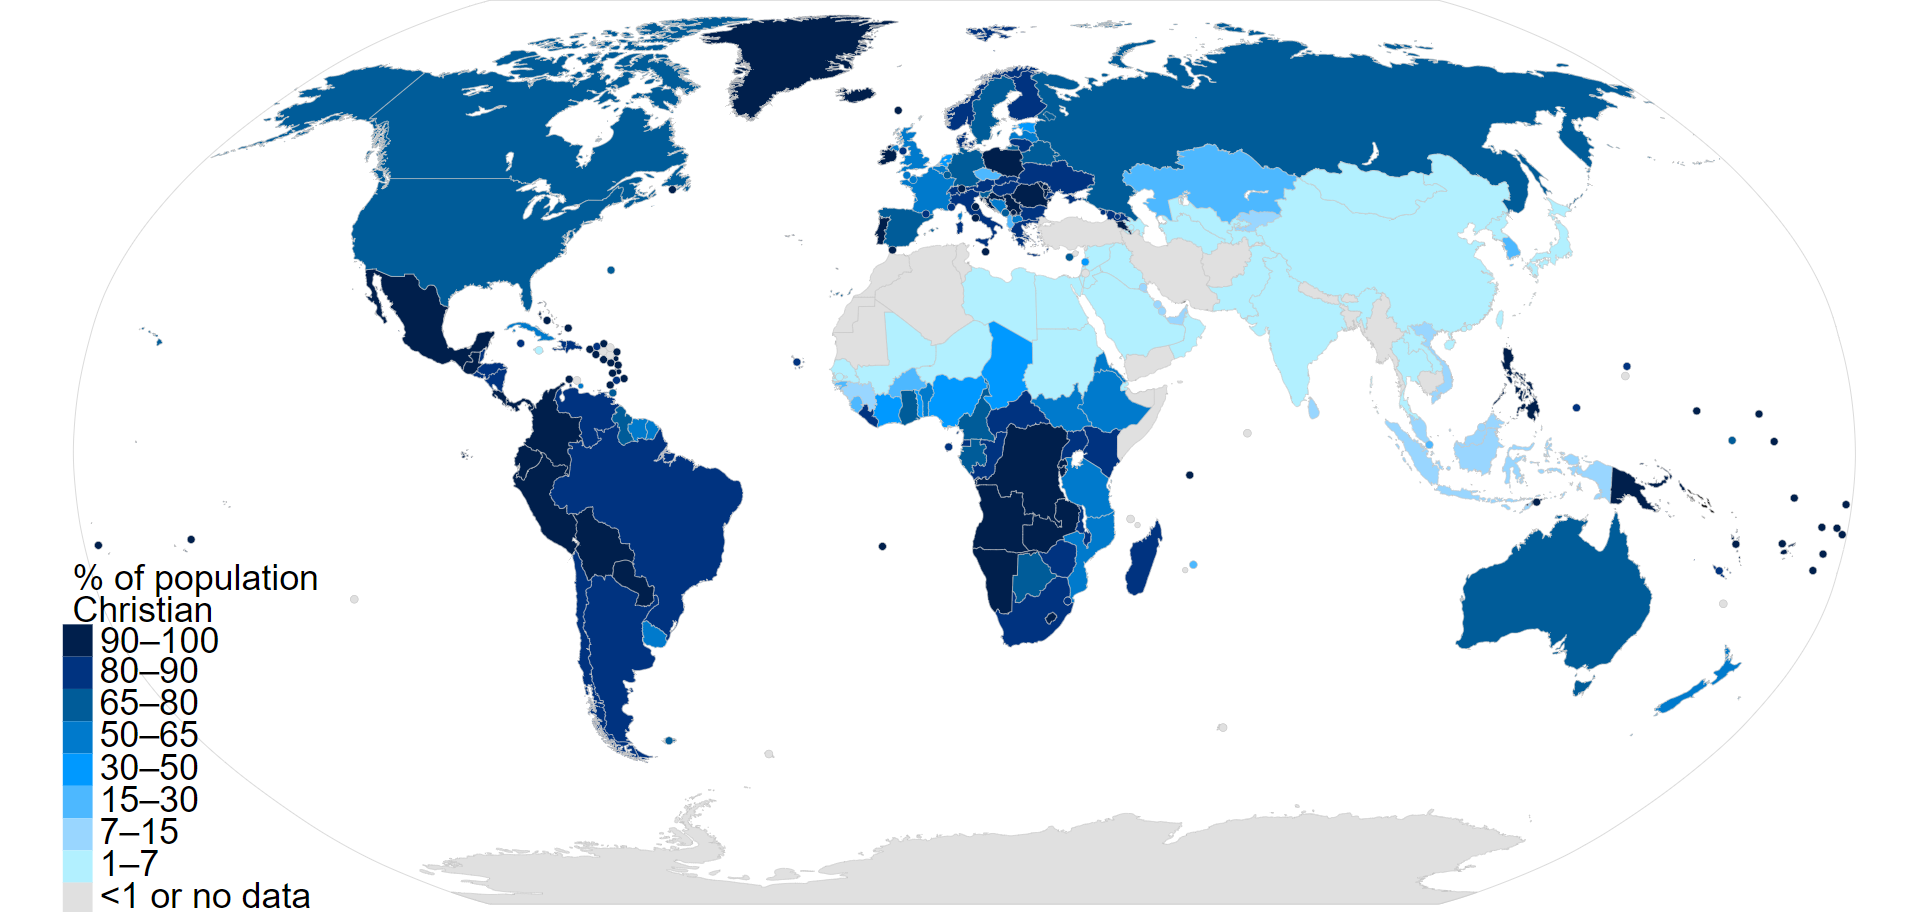 Mật độ phân bố người theo đạo Kitô giáo ở các nước trên thế giới, các màu xanh đậm thể hiện mật độ phân bố dày (Nguồn: Wikipedia)